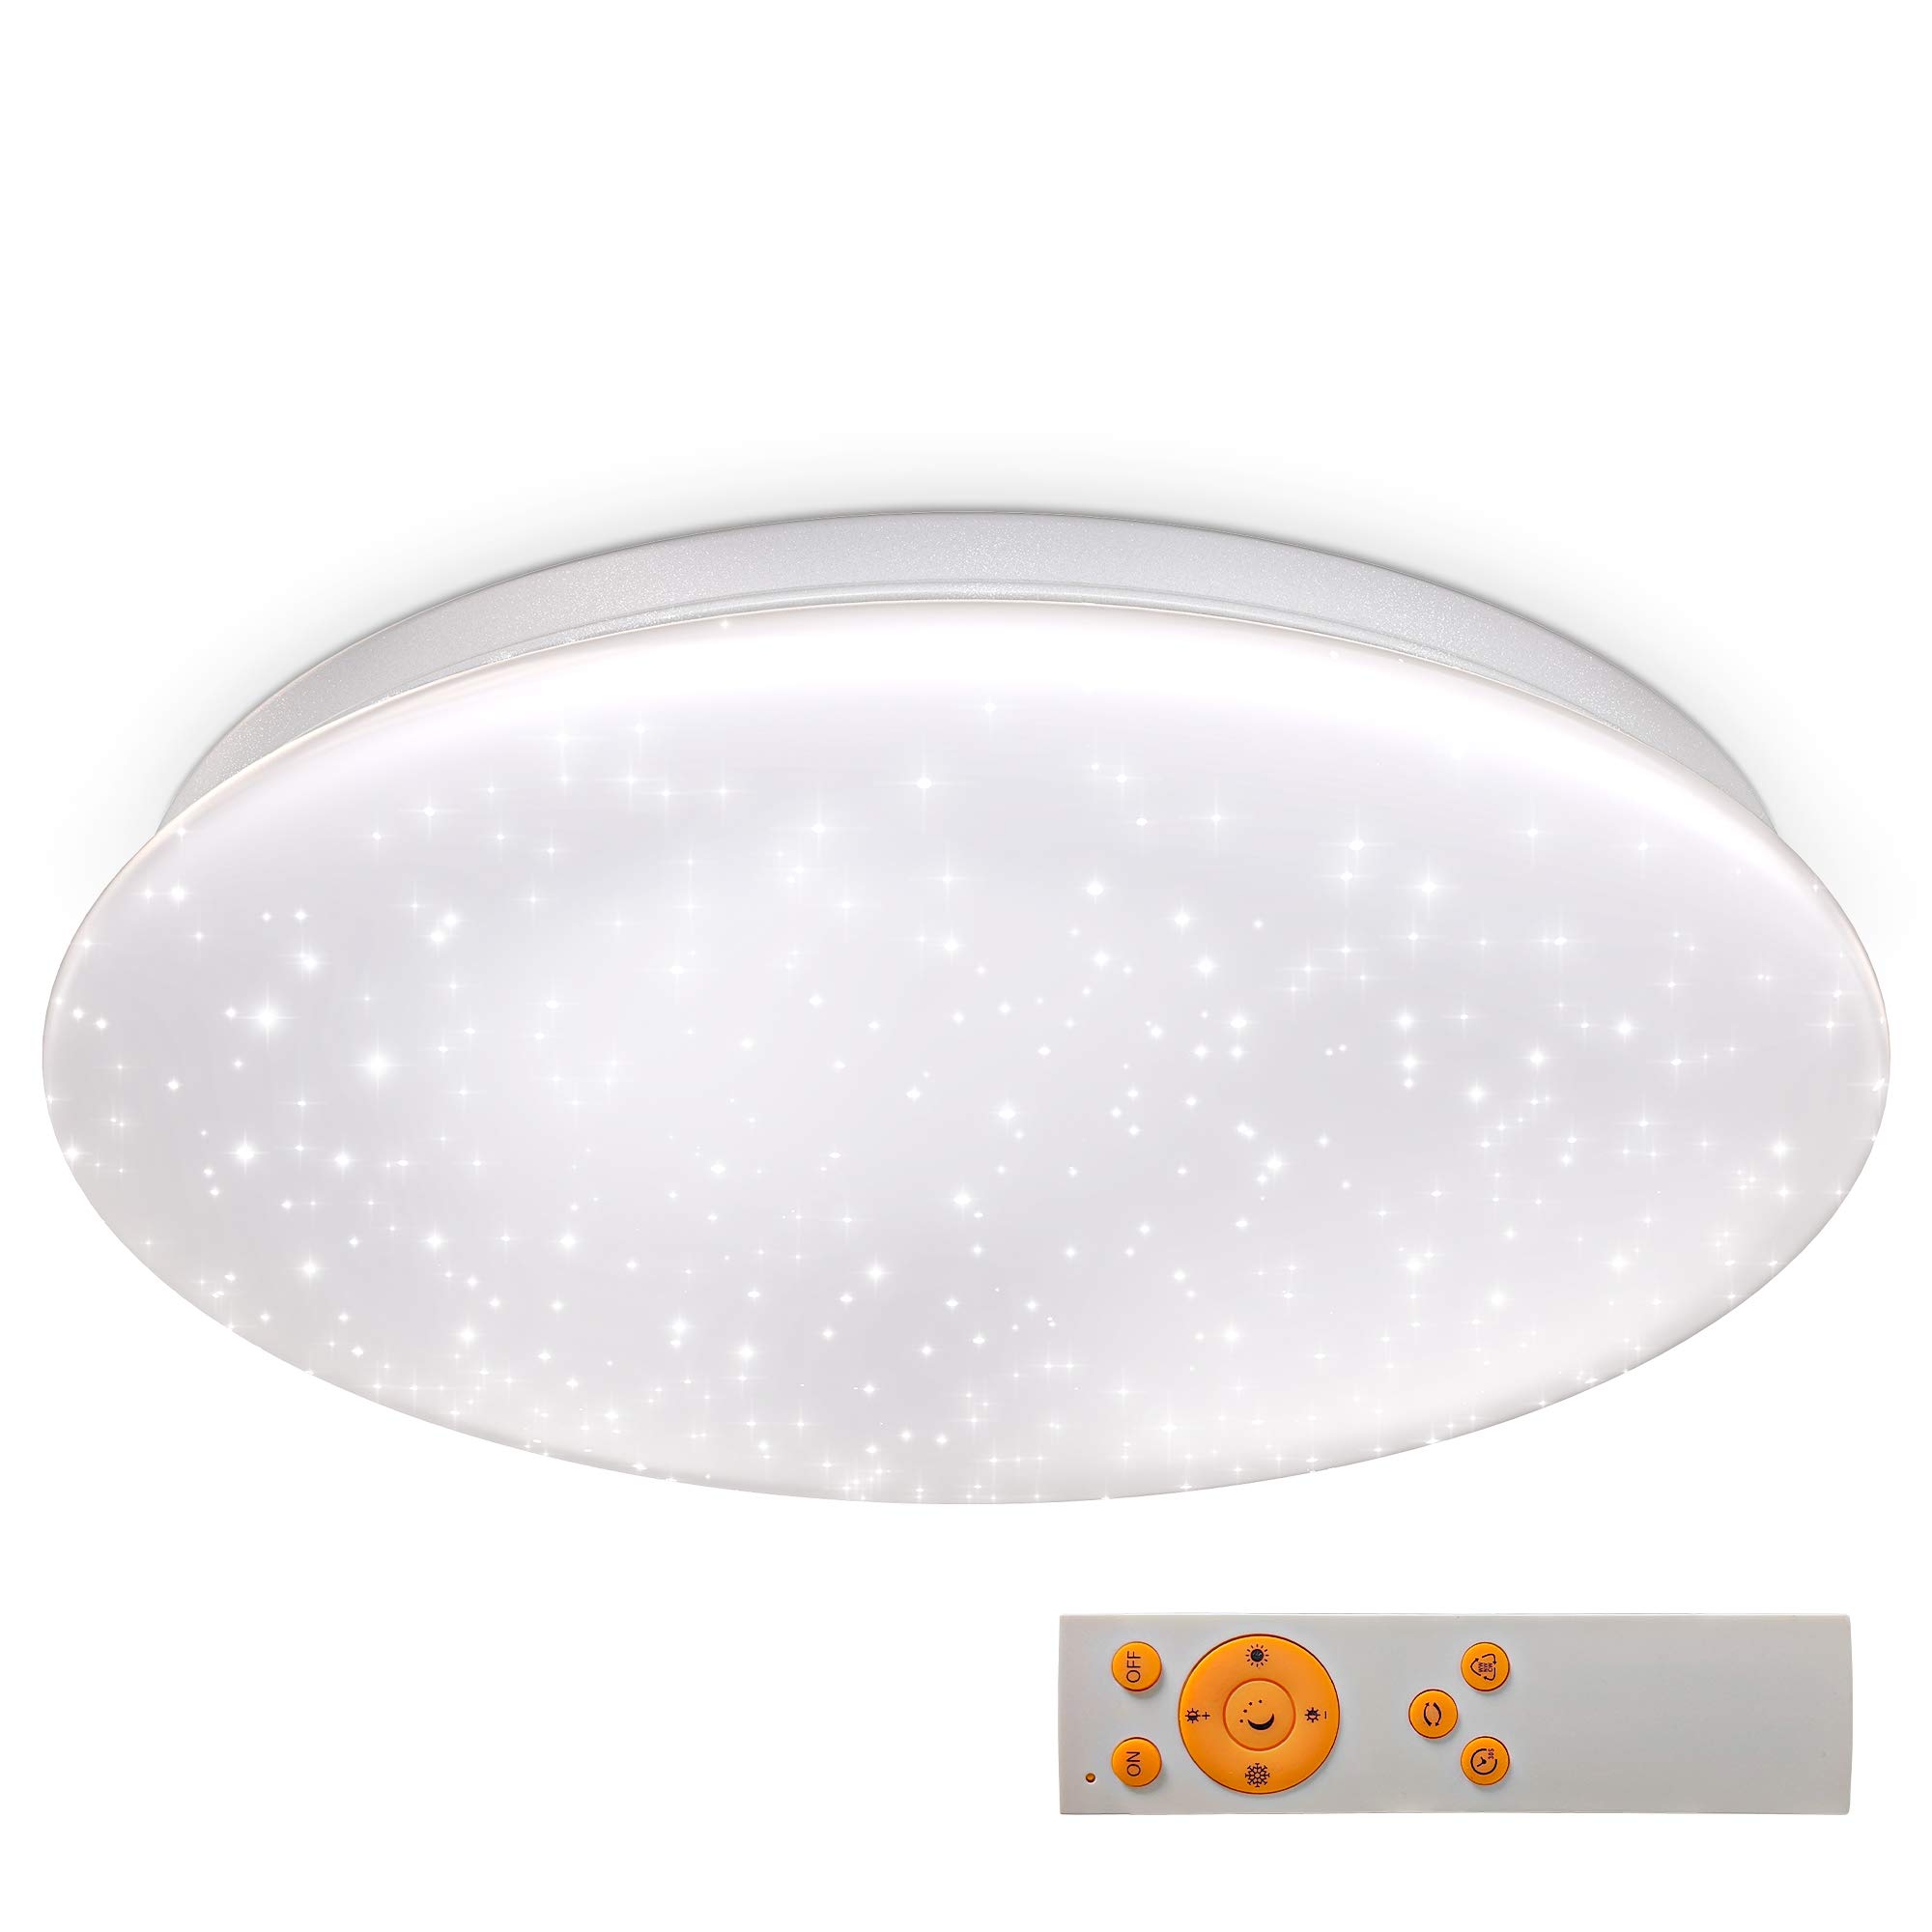 B.K.Licht - LED Deckenlampe mit Sternenhimmel, Fernbedienung, einstellbar von warmweiß bis kaltweiß, LED Deckenleuchte, LED Lampe, Wohnzimmerlampe, Schlafzimmerlampe, Küchenlampe, 33,8x8 cm, Weiß